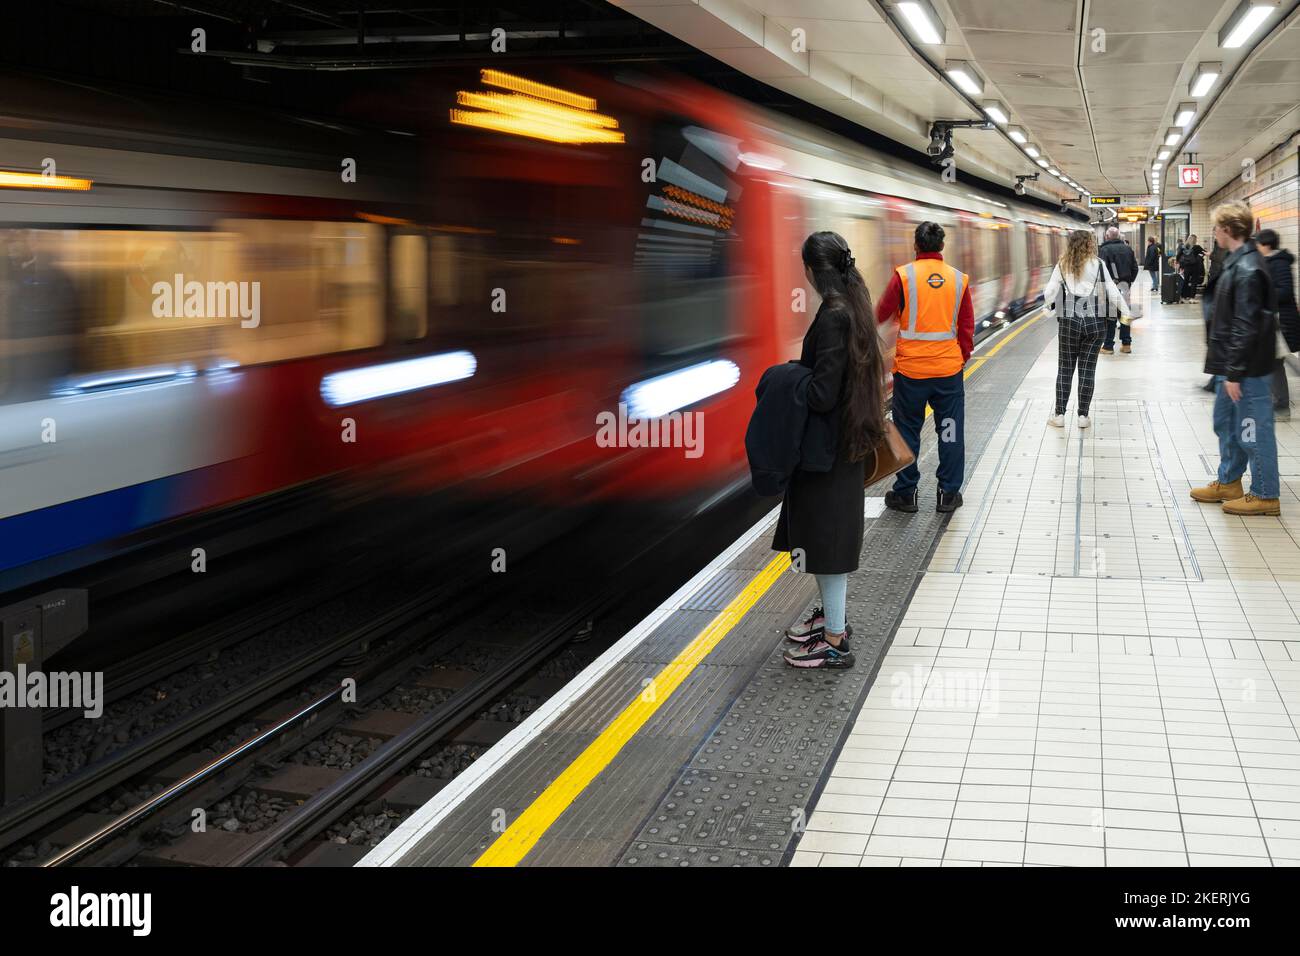 Passagers attendant un train de métro qui se trouve à la gare de Victoria sur la ligne Circle. Londres, Angleterre. Thème: Grève du tube, chauffeurs de train de tube, TFL Banque D'Images